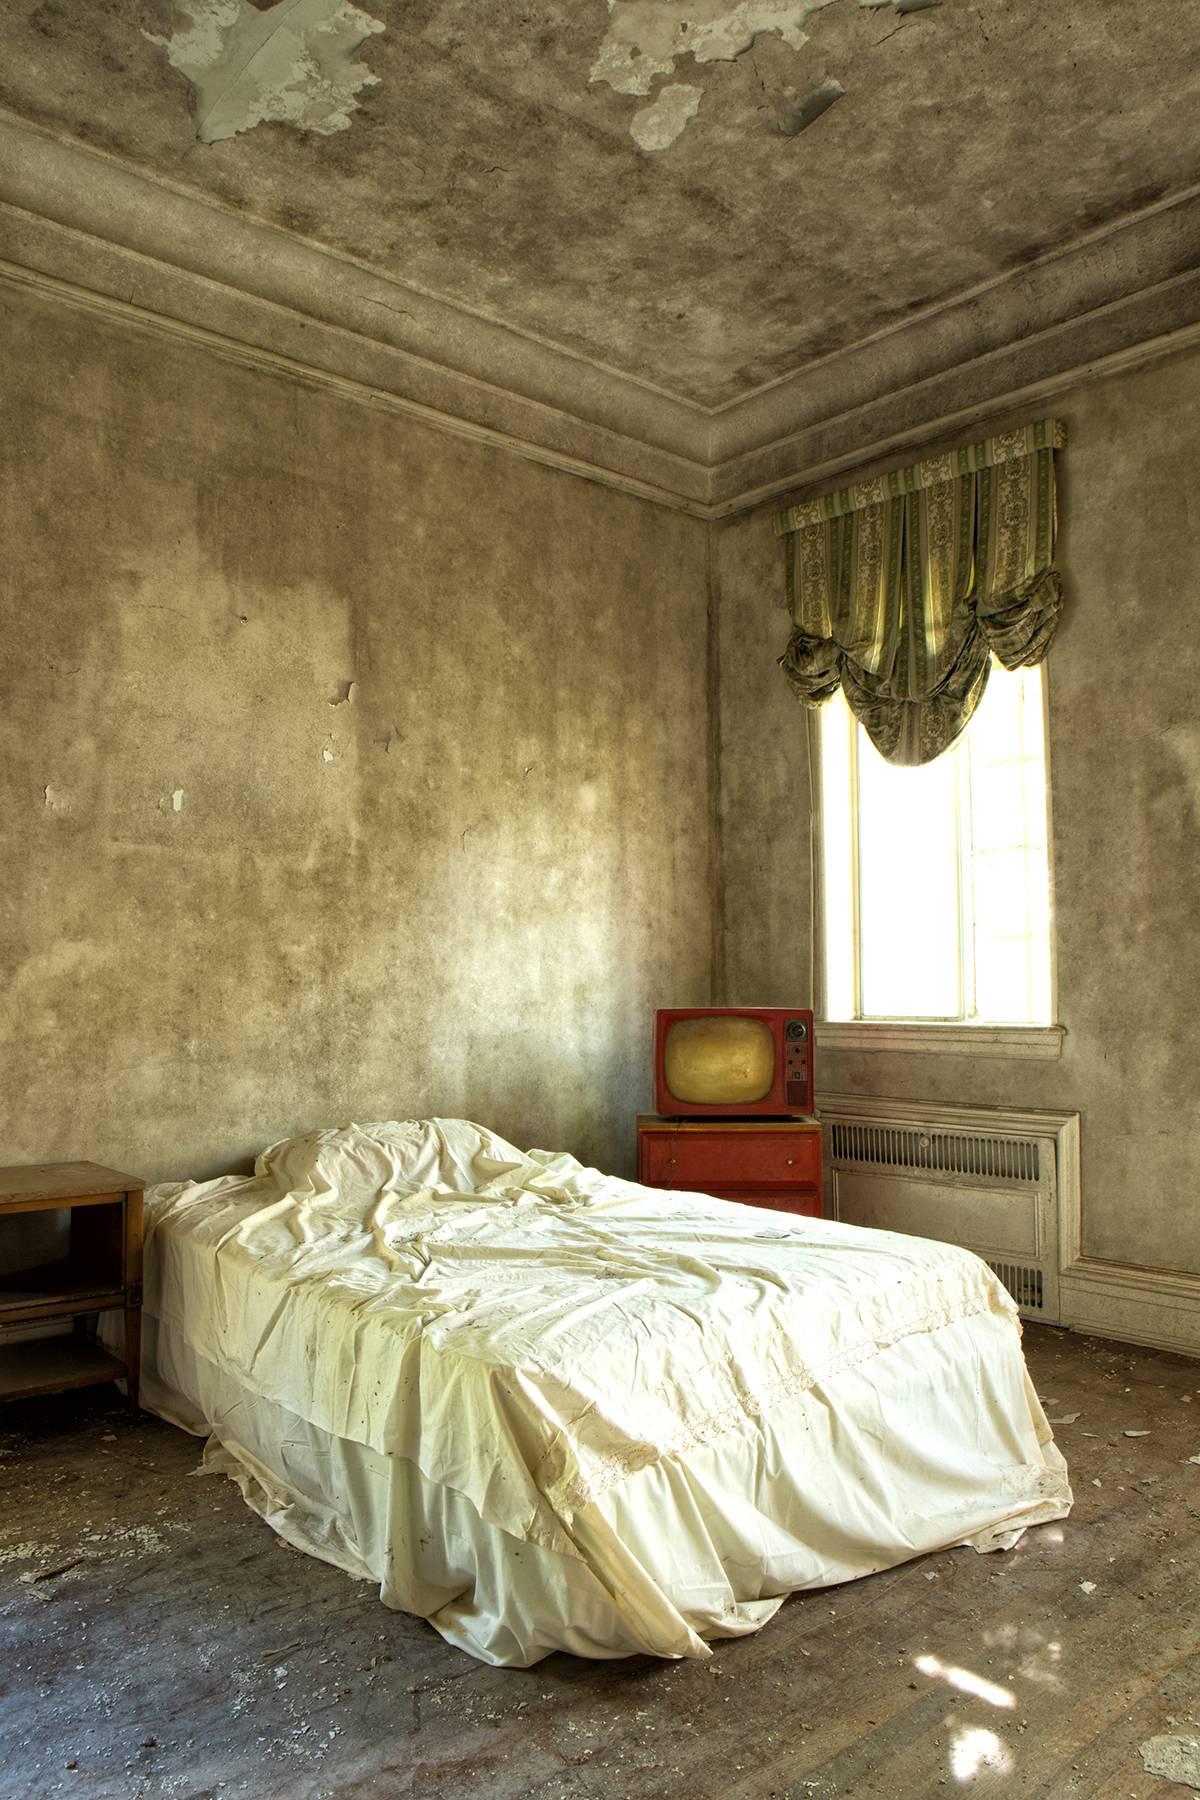 "Momentané", contemporain, abandonné, maison, chambre, rouge, photographie couleur.